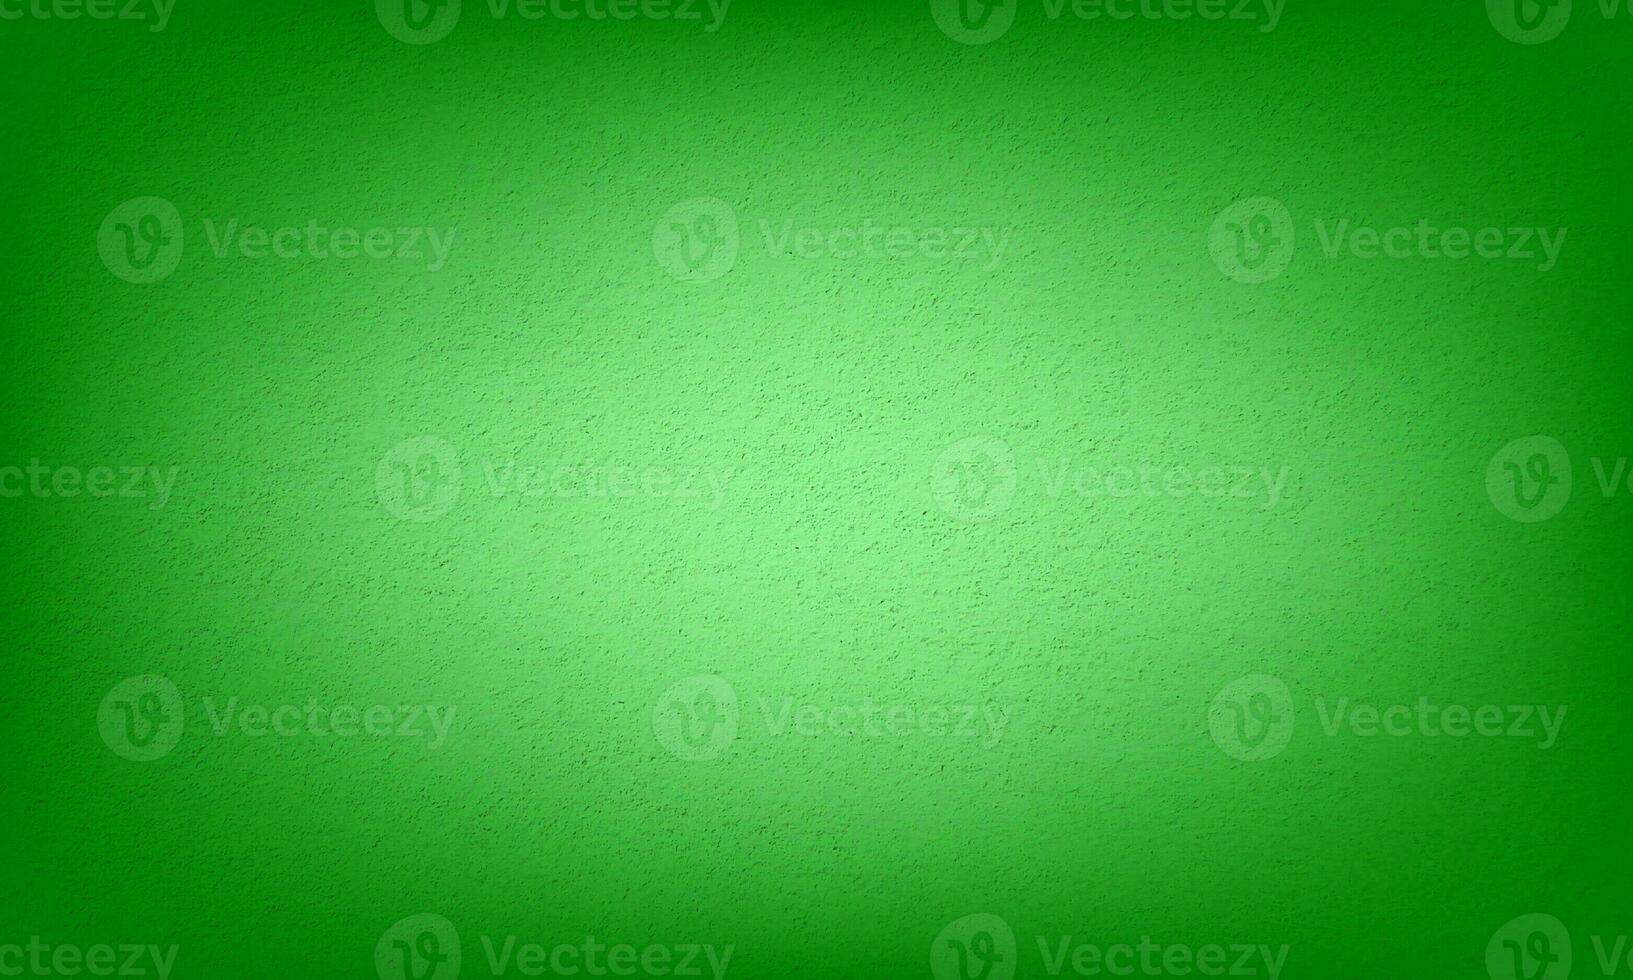 fondo de yeso abstracto de color degradado verde foto